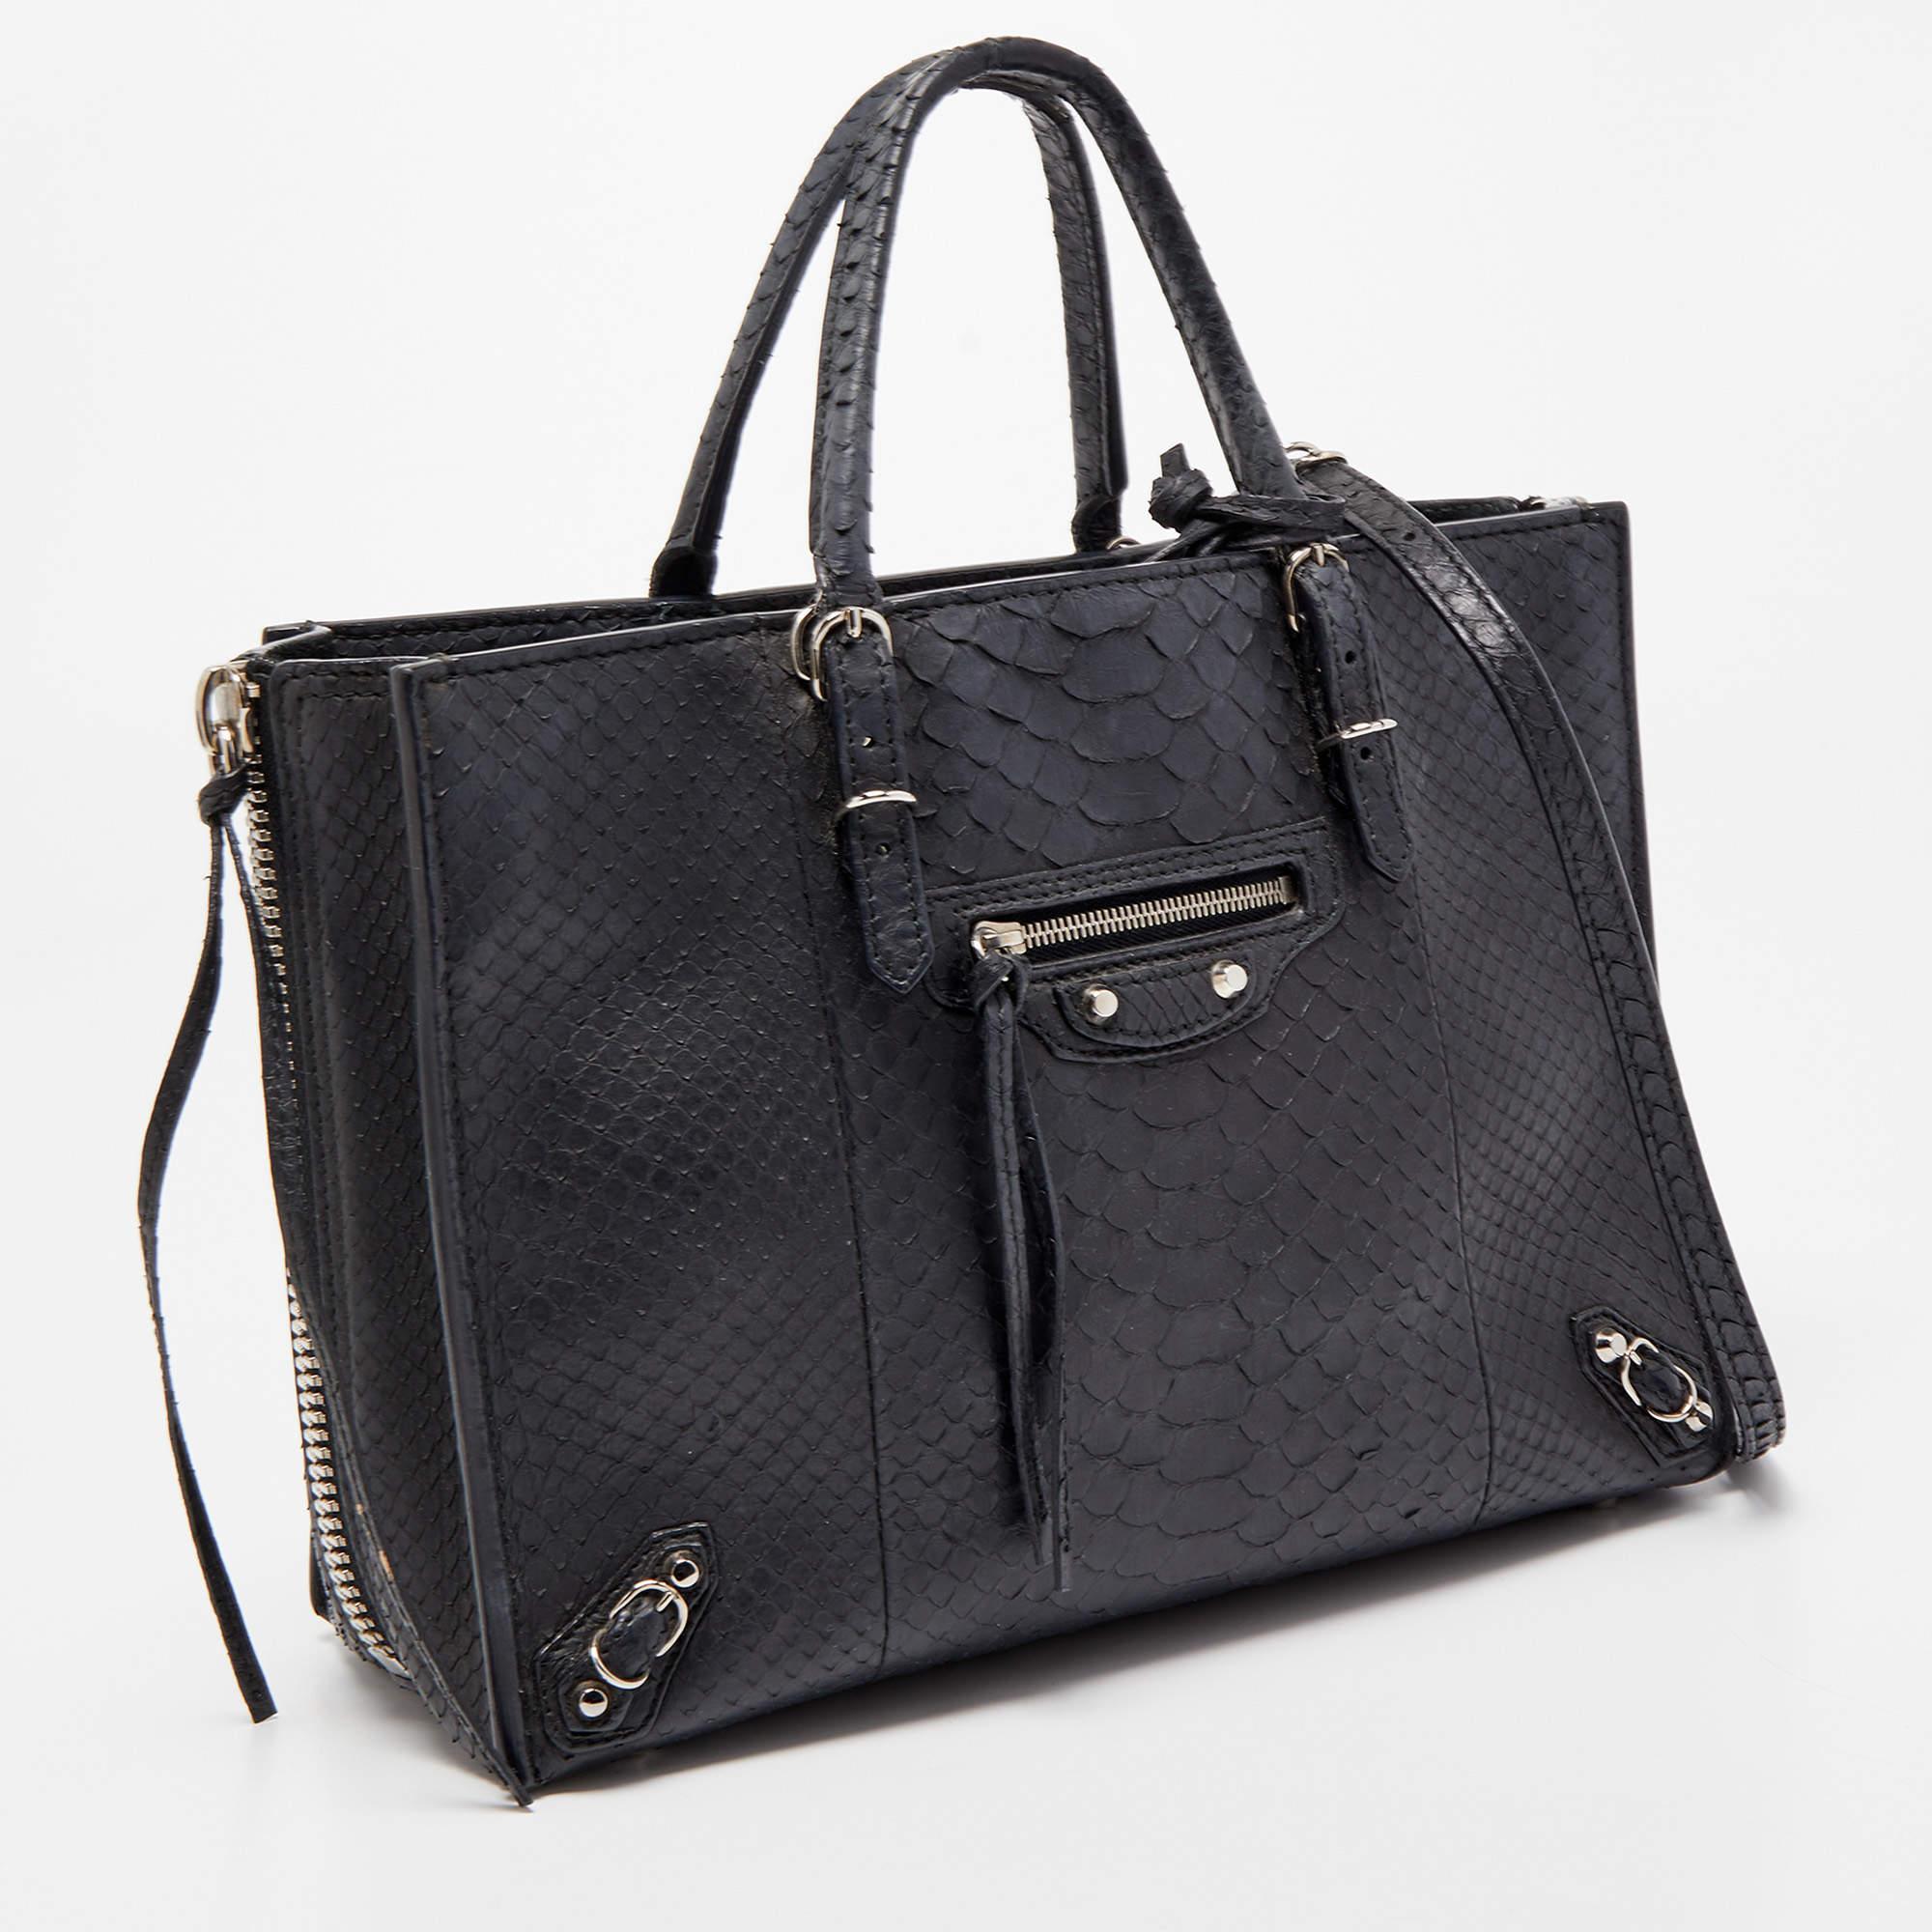 Die Tasche Papier A6 von Balenciaga verbindet Luxus mit praktischer Mode. Sie ist aus Pythonleder gefertigt und verfügt über zwei obere Griffe, eine Innenausstattung aus Leder und einen Taschenspiegel. Die Reißverschlüsse und Schnallendetails machen